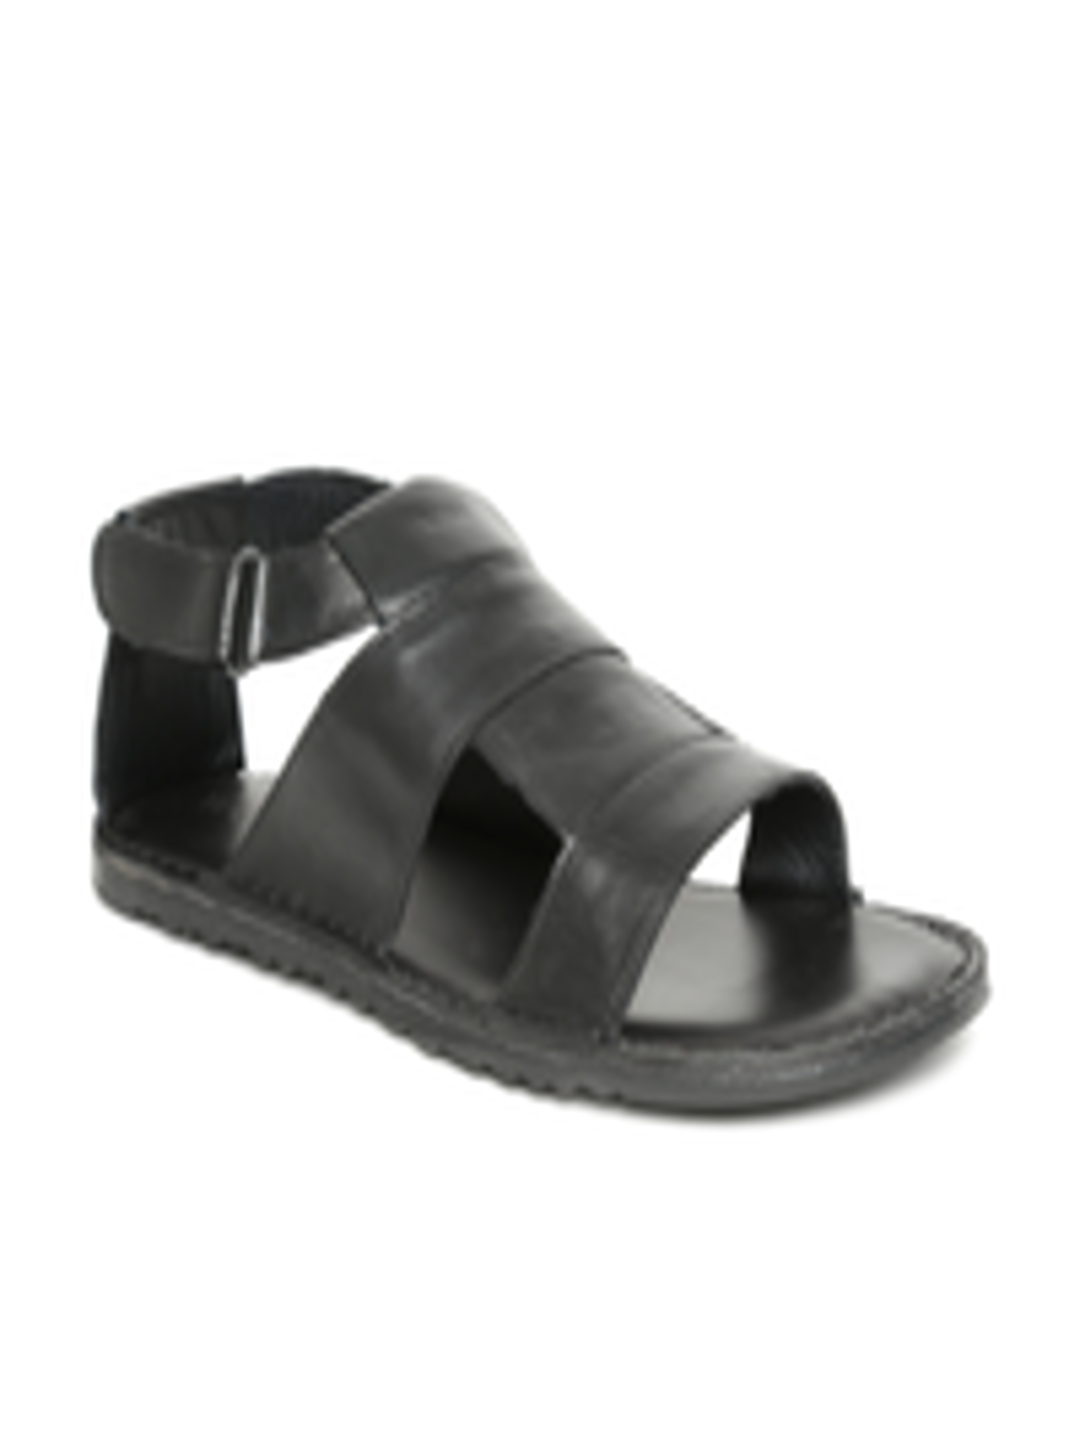 Buy Woods Men Black Leather Sandals - Sandals for Men 1557641 | Myntra